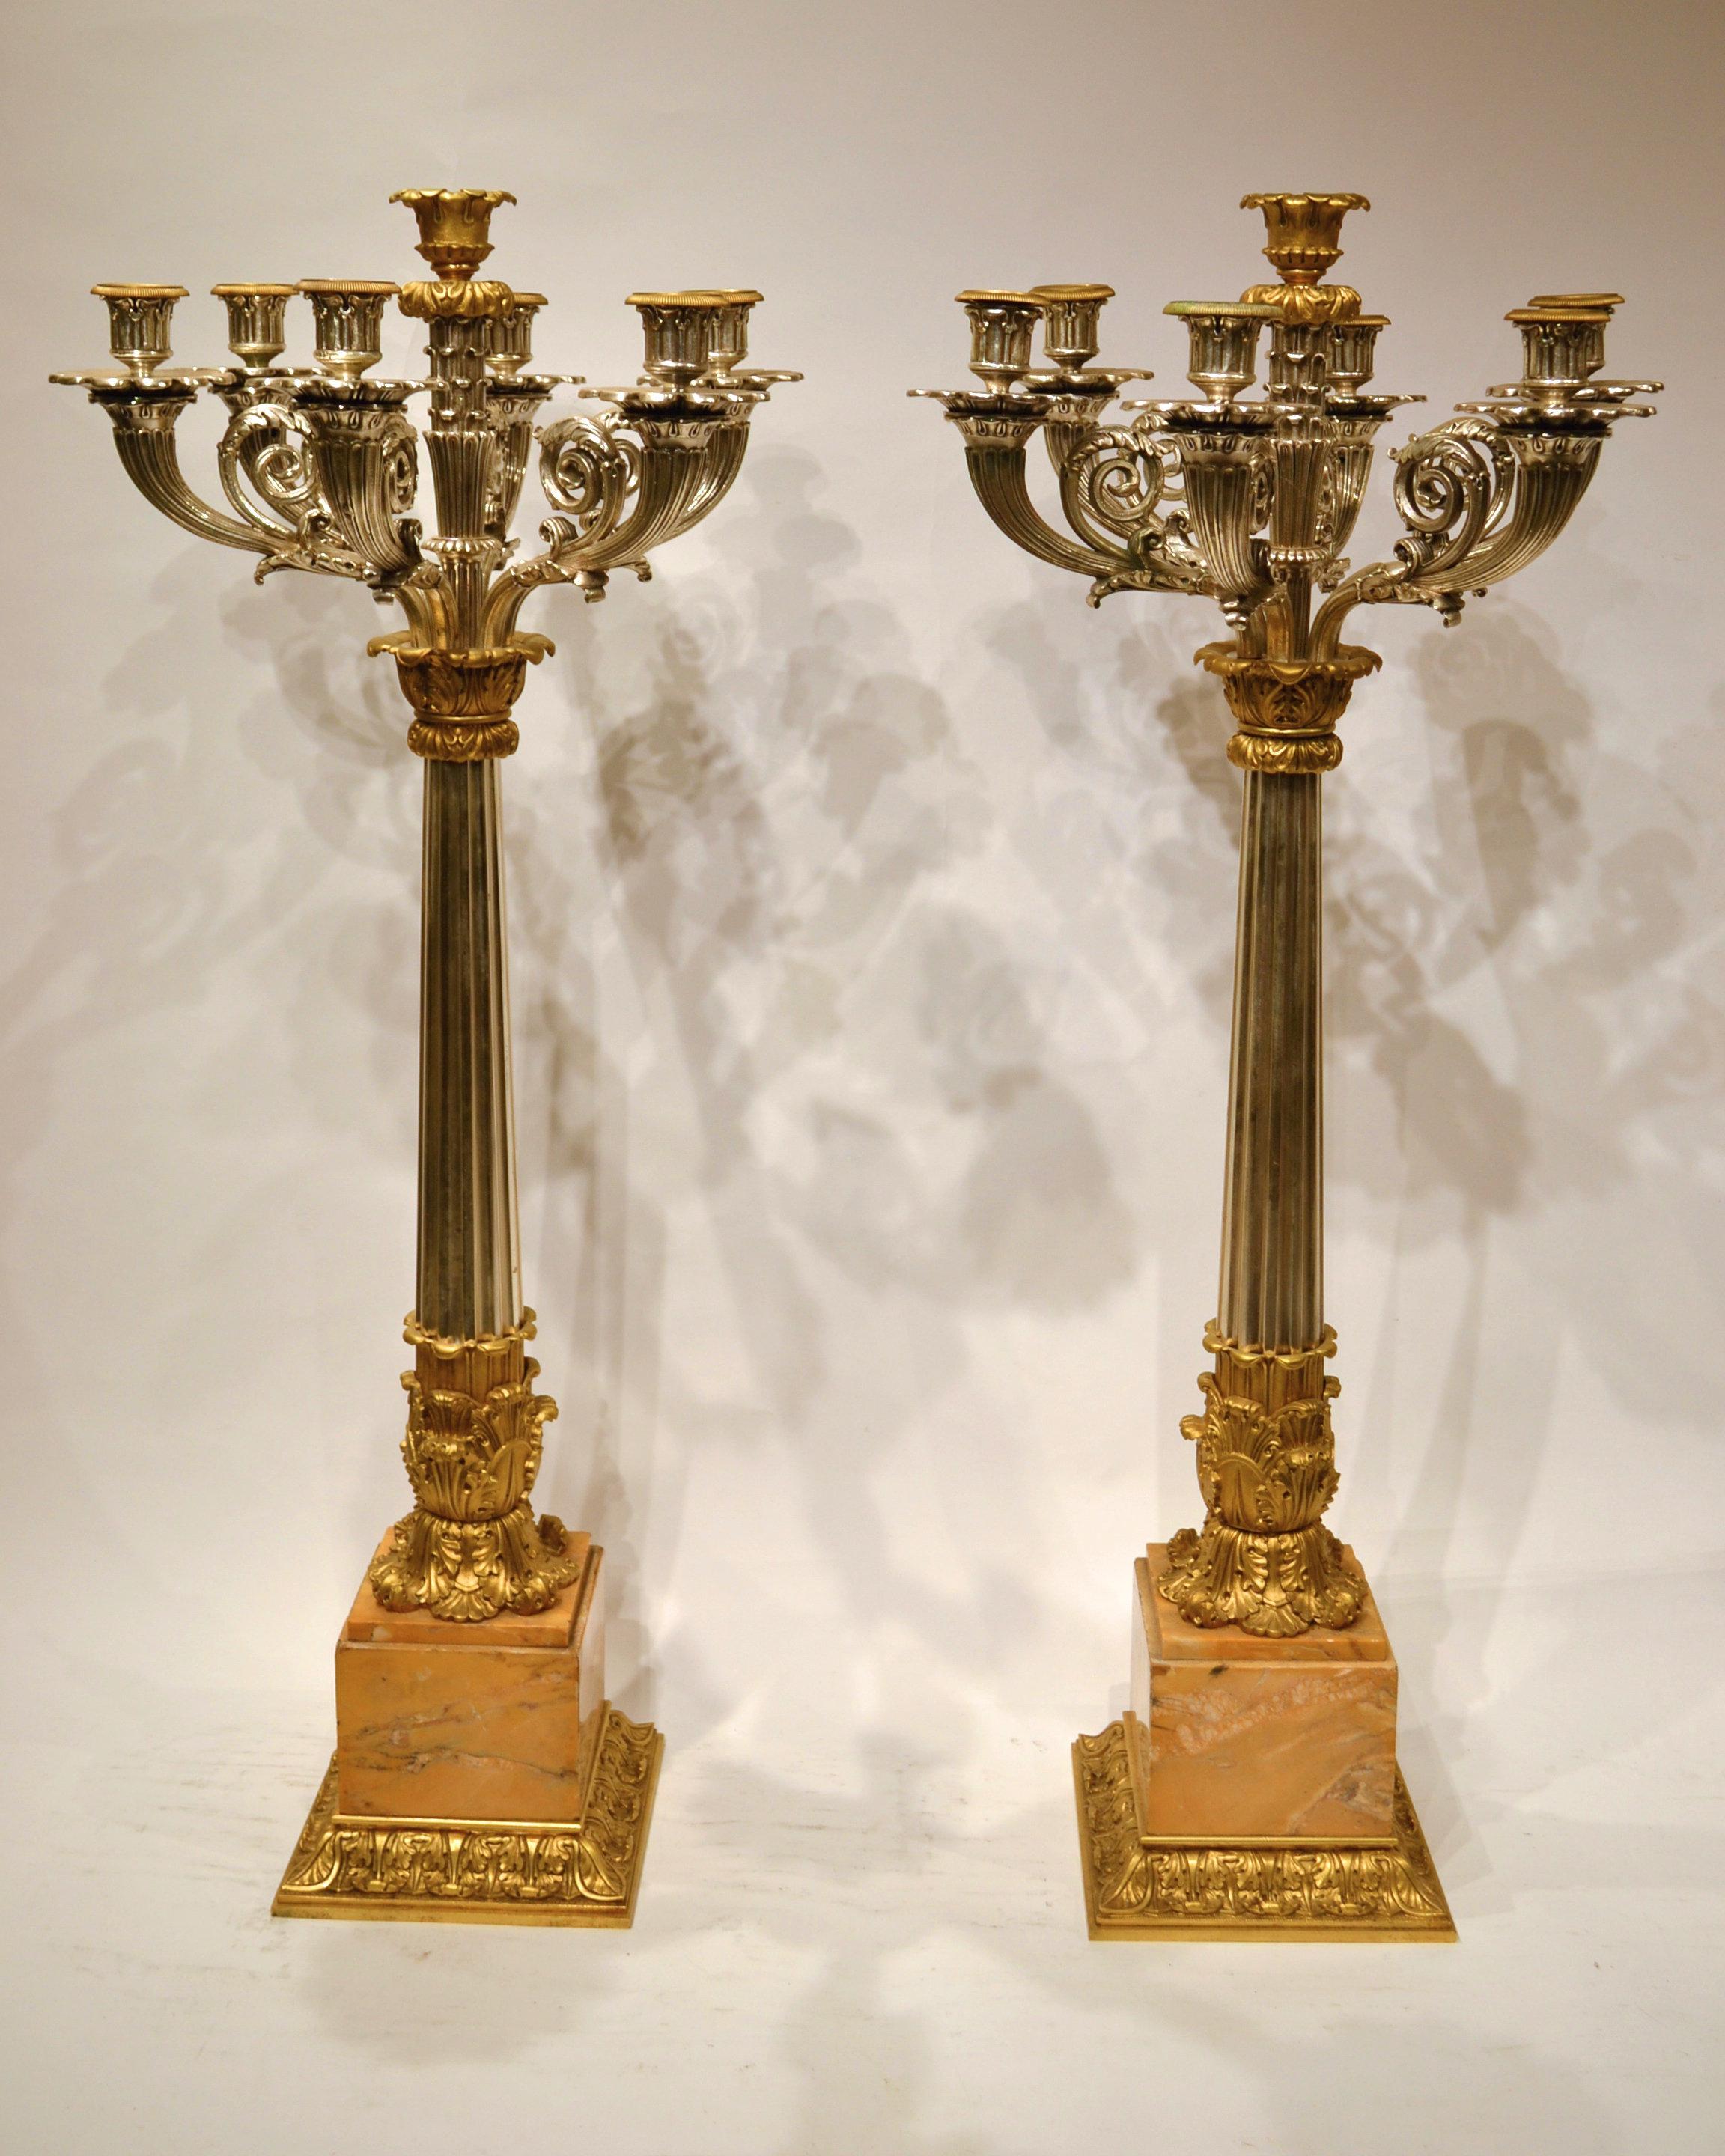 Zwei sehr große französische Kandelaber im Empire-Stil des 19. Jahrhunderts aus versilberter und vergoldeter Bronze mit Marmorsockeln.